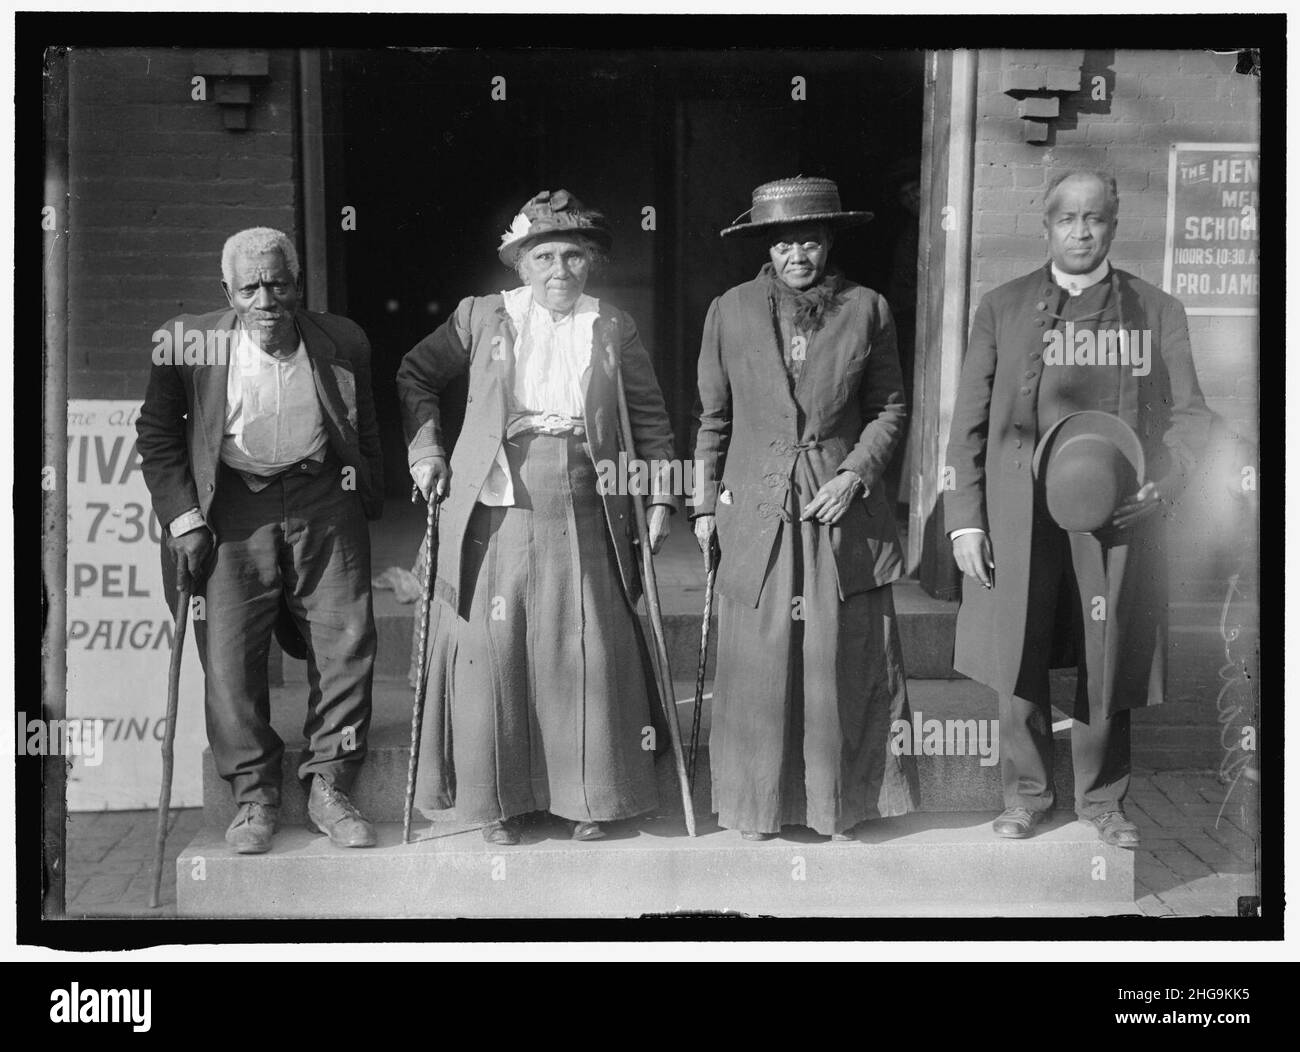 SLAVE REUNION. LEWIS MARTIN, 100 ANNI; MARTHA ELIZABETH BANKS, 104 ANNI; AMY WARE, ETÀ 103; REV. S.P. DISEGNATO, NATO LIBERO Foto Stock